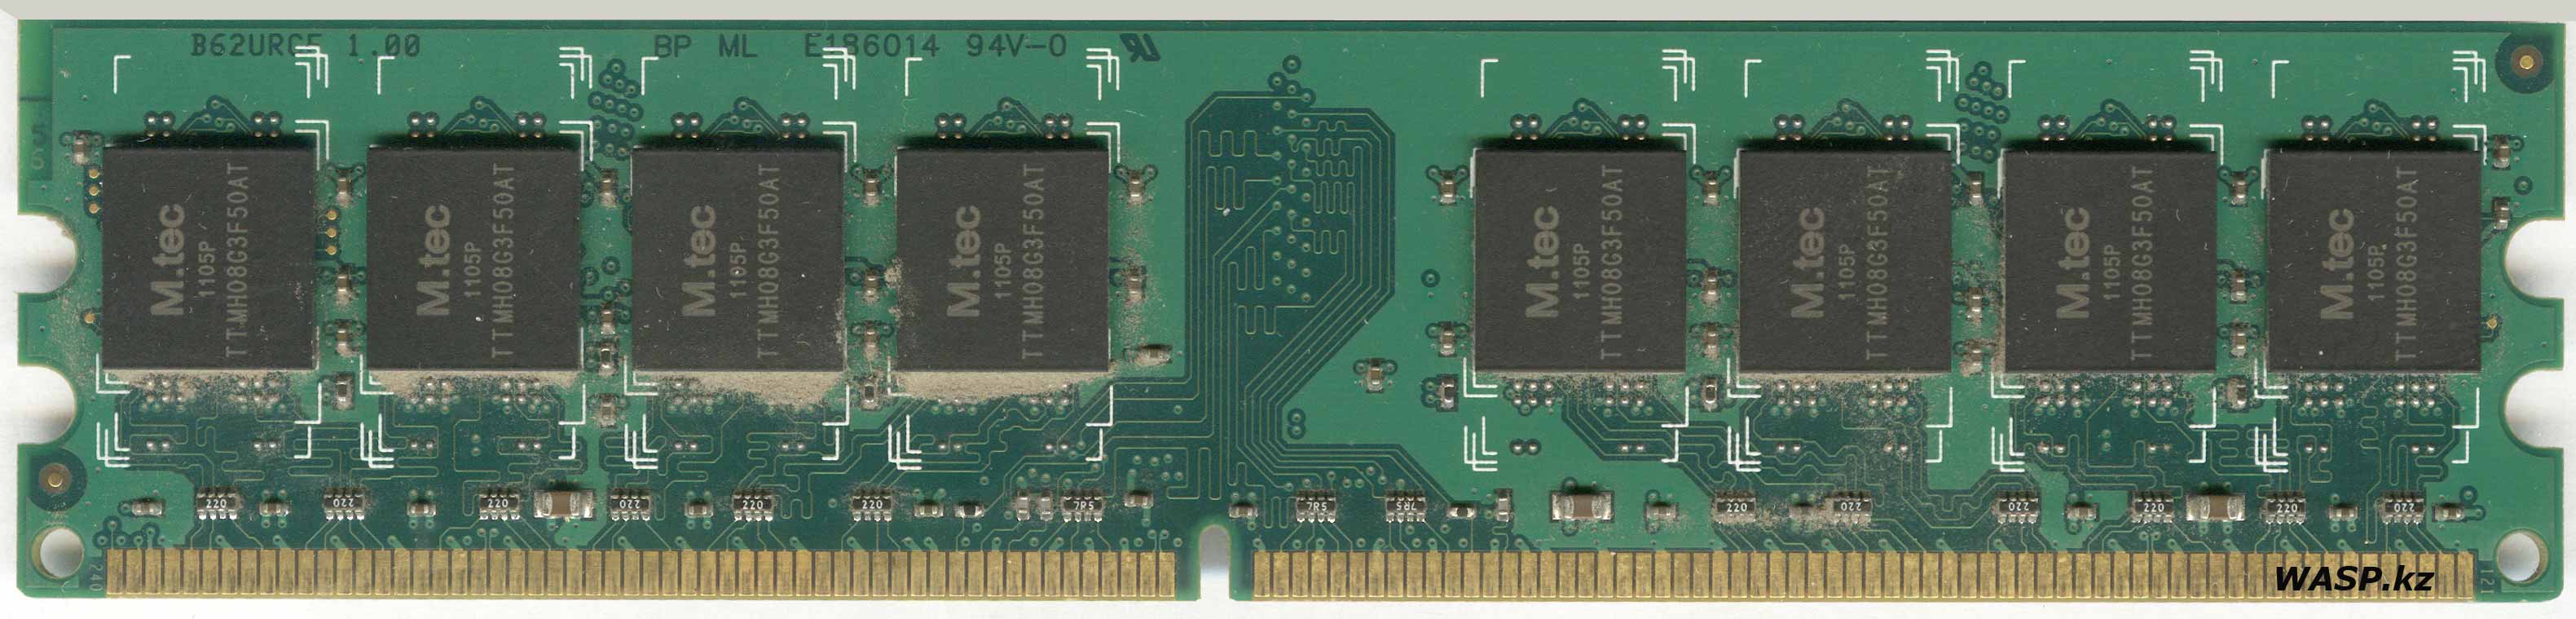 M.tec TTMH08G3F50AT чипы 8DPT5MK8-5AMP оперативная память DDR2